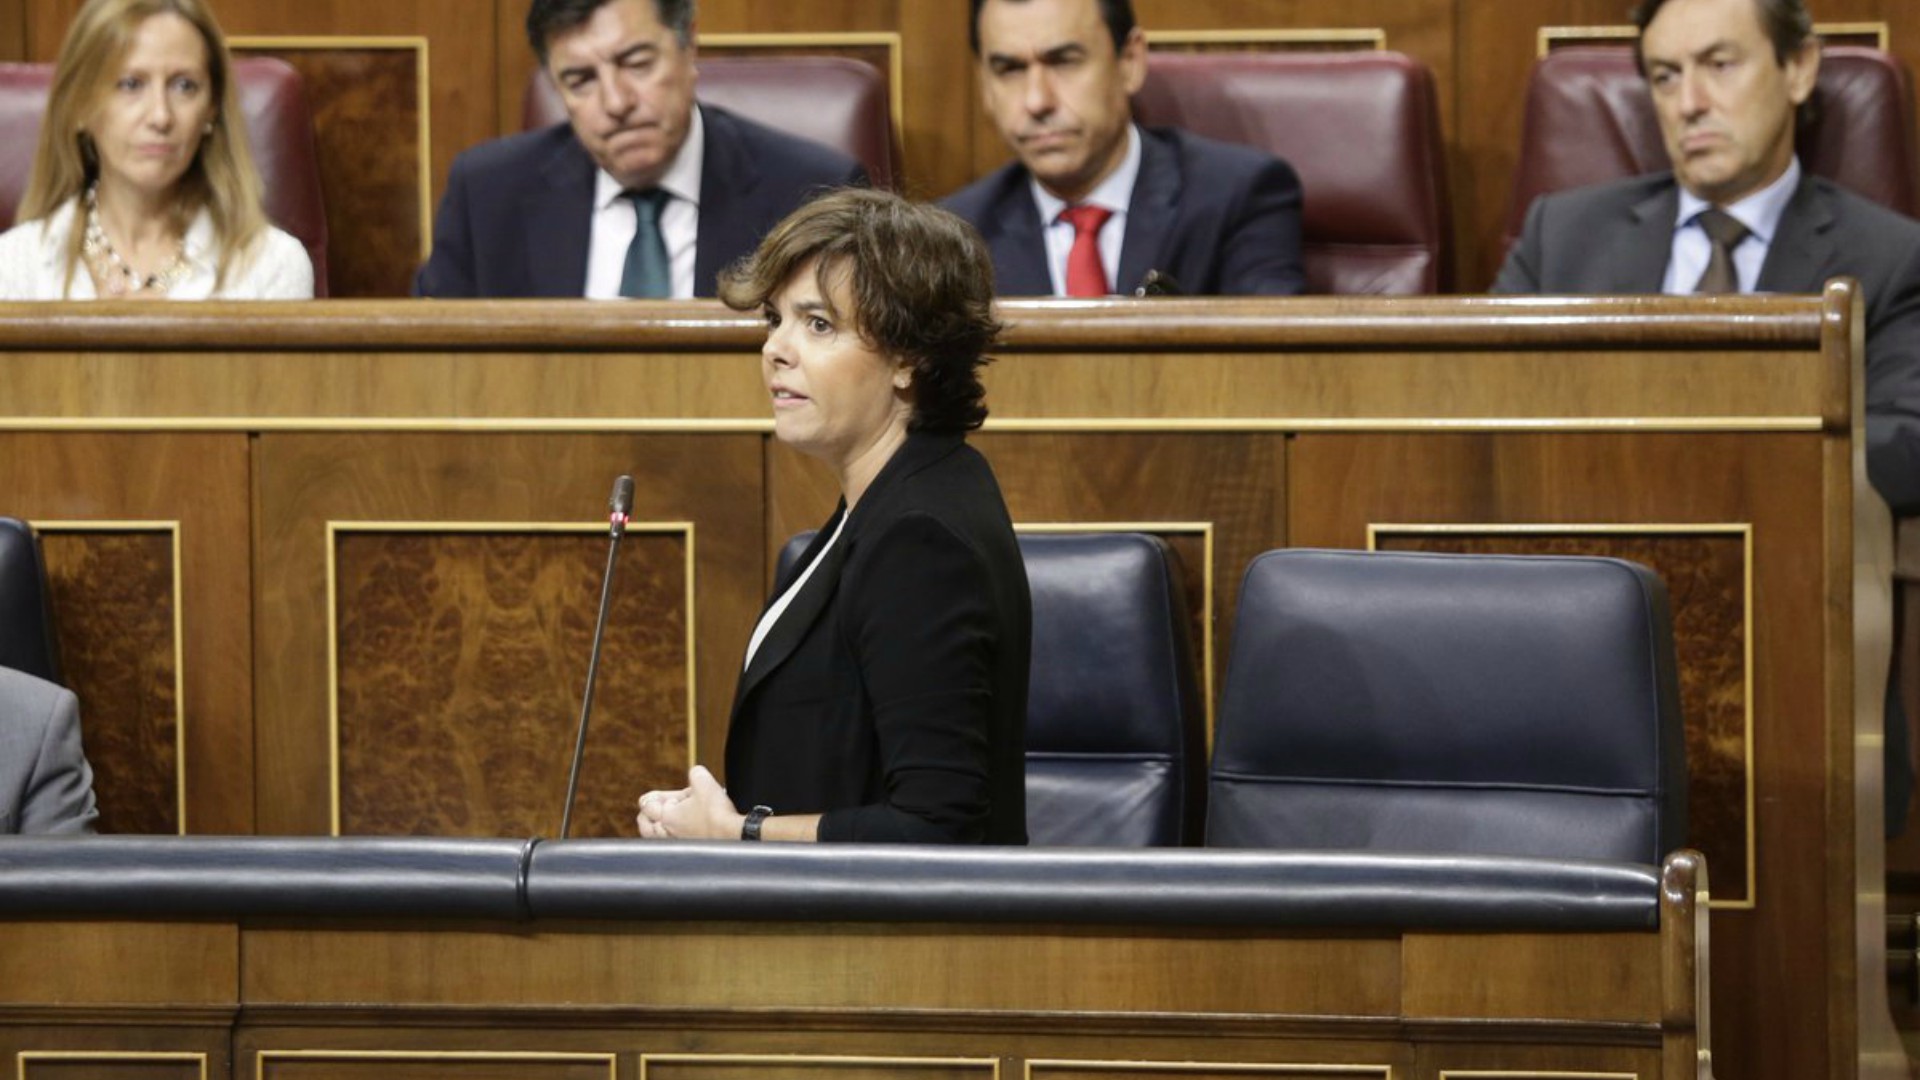 El Gobierno pide que se mantenga la unidad política tras el referéndum catalán